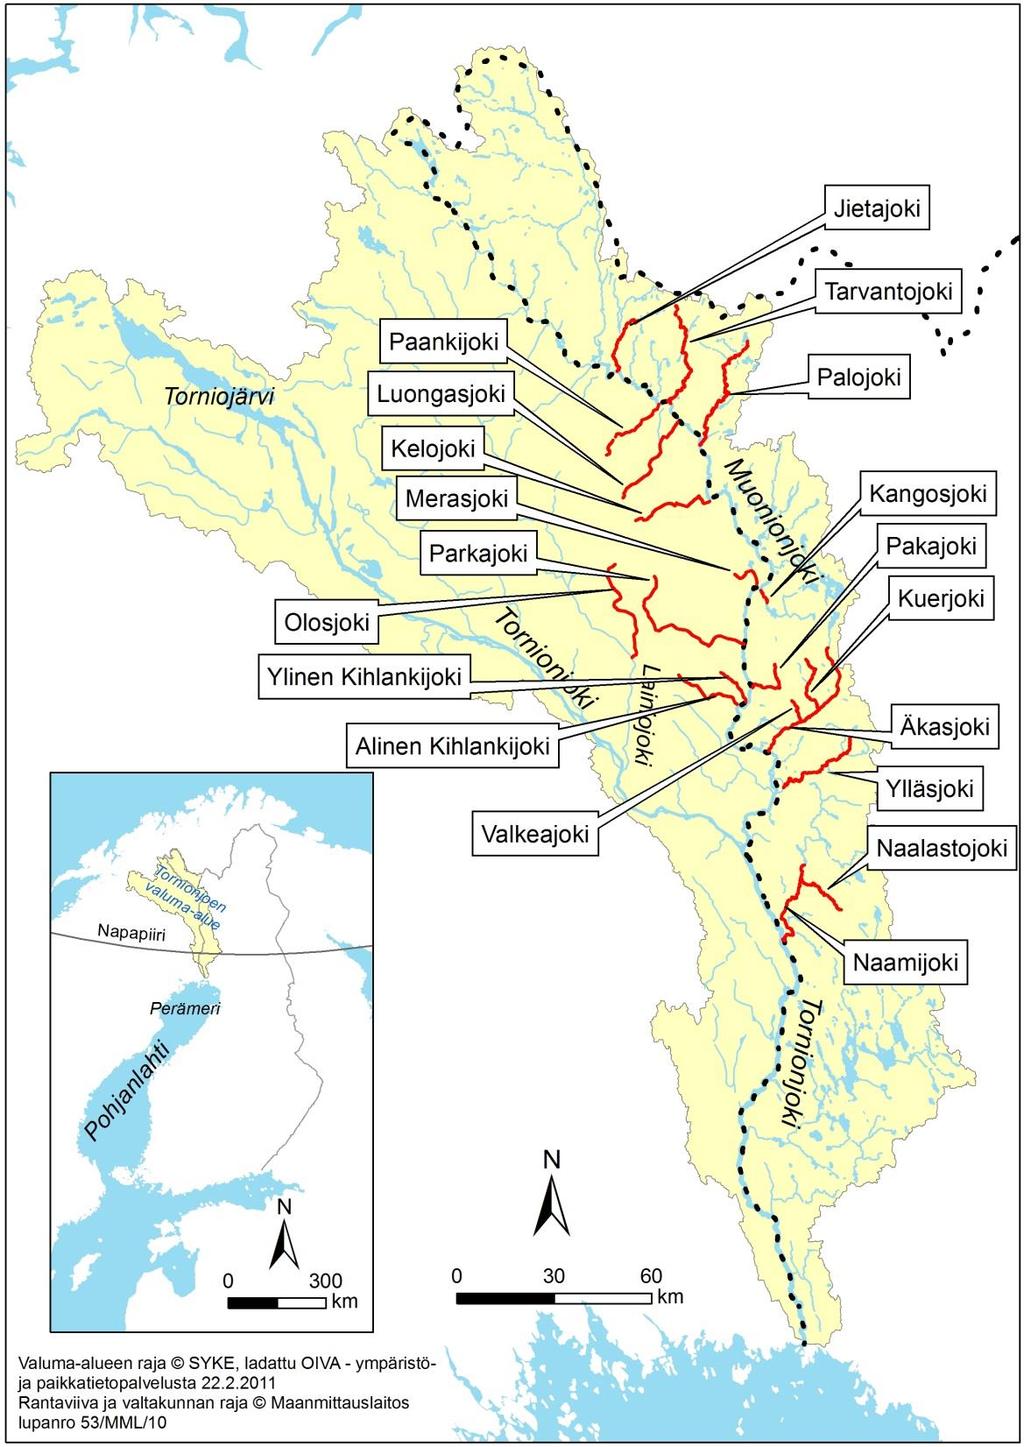 Figur 12. Biflöden som anses viktiga för reproduktion av havsöring i Torneälvens vattensystem.